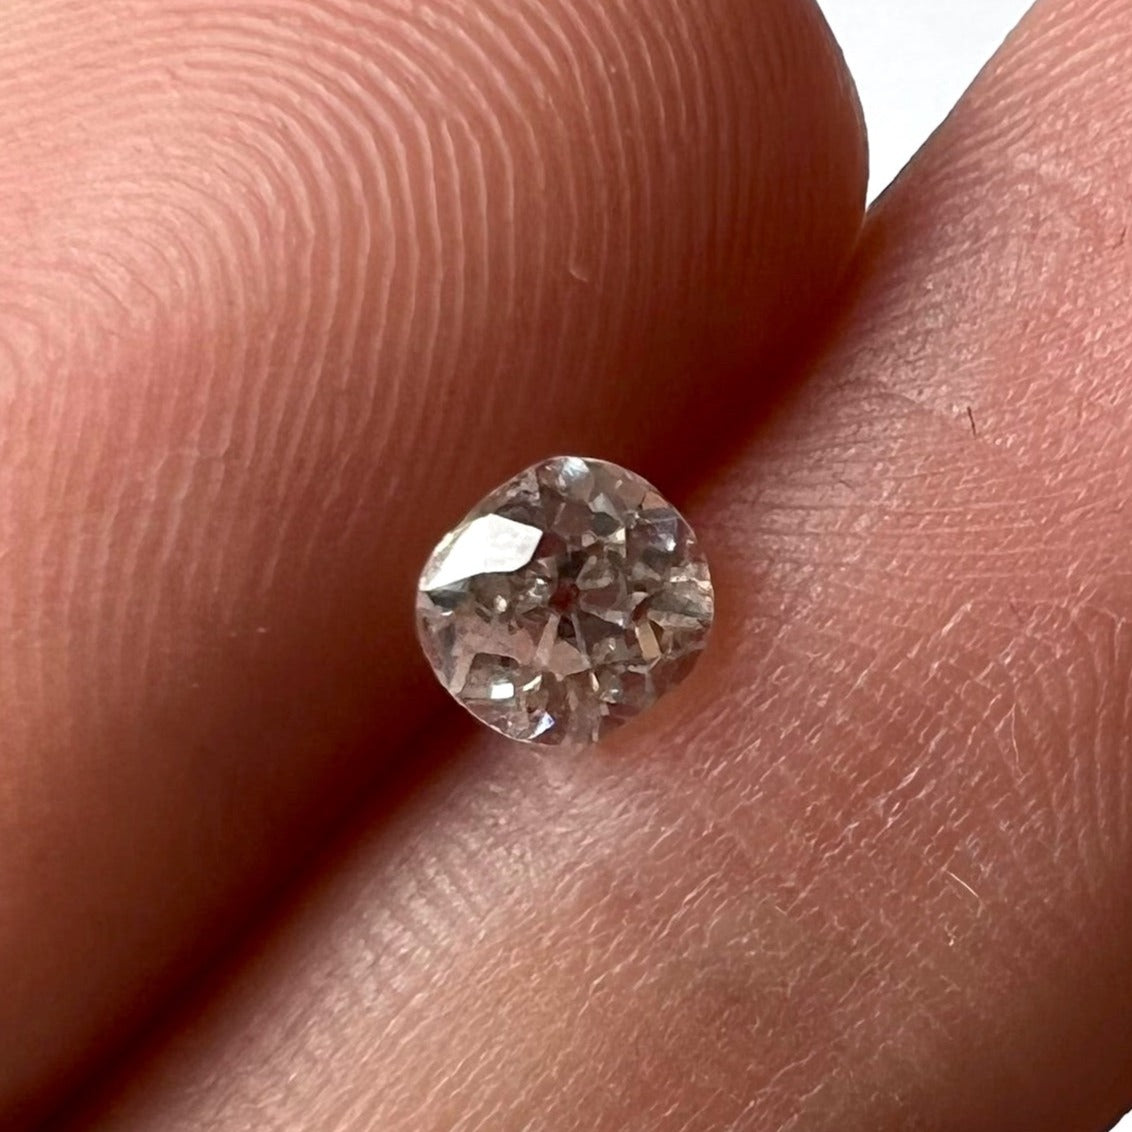 .56CT Old Mine Cut Diamond K I1 4.99x4.56x3.51mm Natural Earth mined